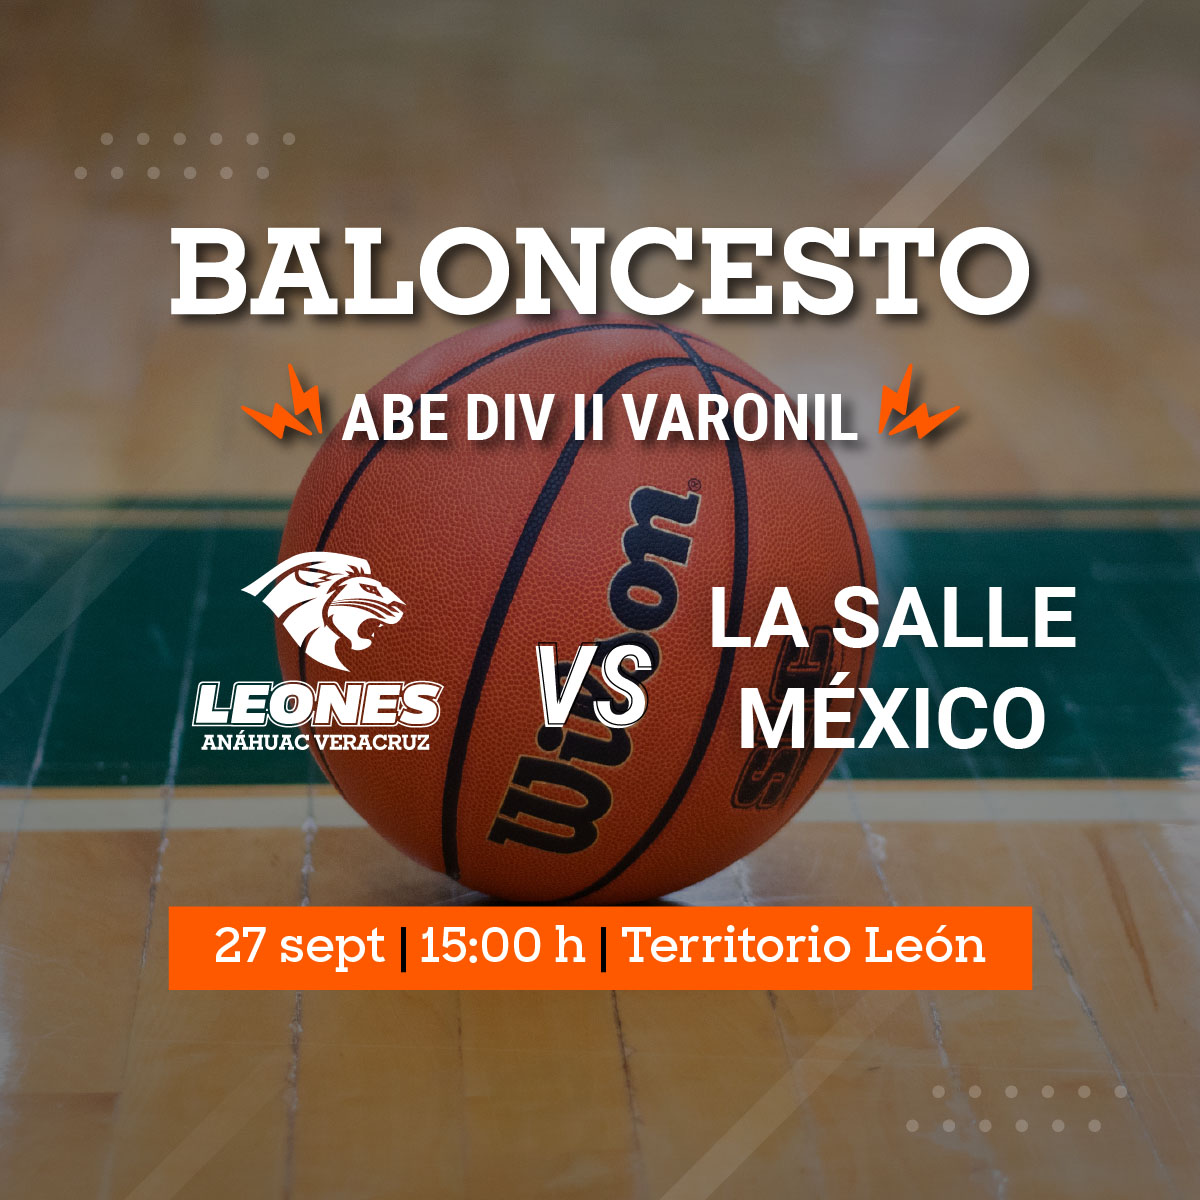 Baloncesto Varonil ABE: Leones vs La Salle México